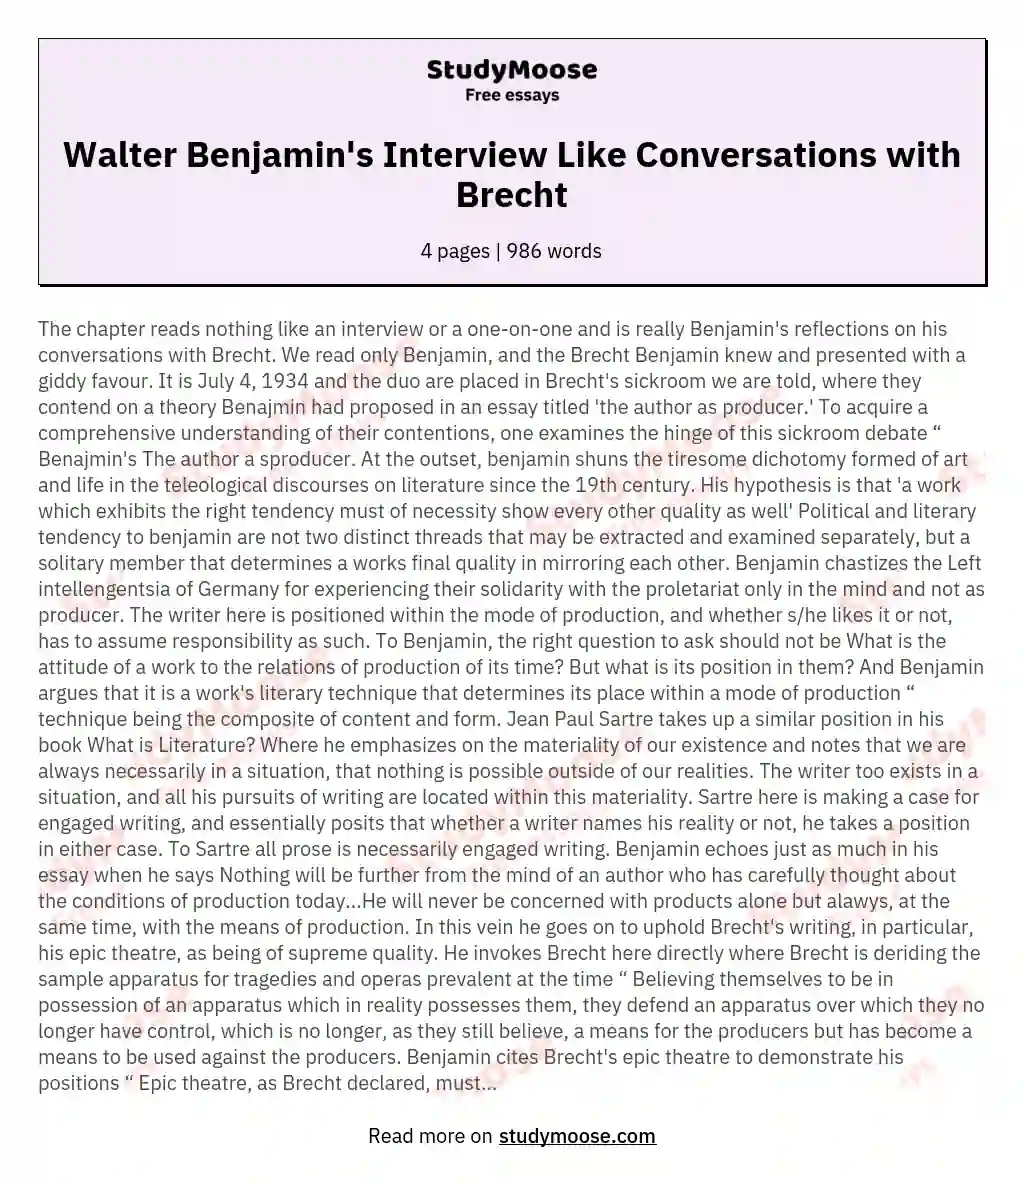 Walter Benjamin's Interview Like Conversations with Brecht essay